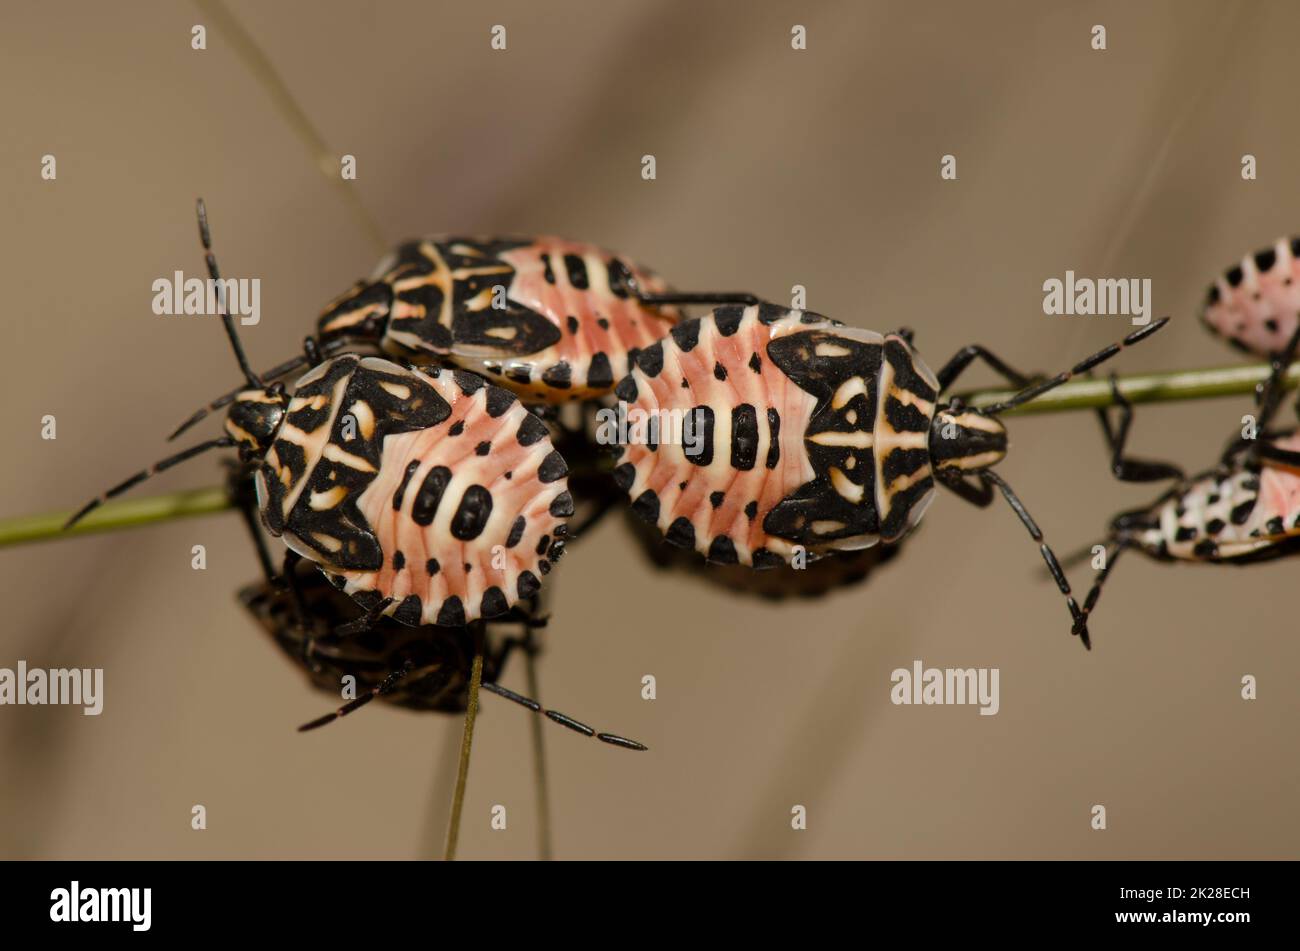 Nymphs of shield bug Euryderma ornata. Stock Photo